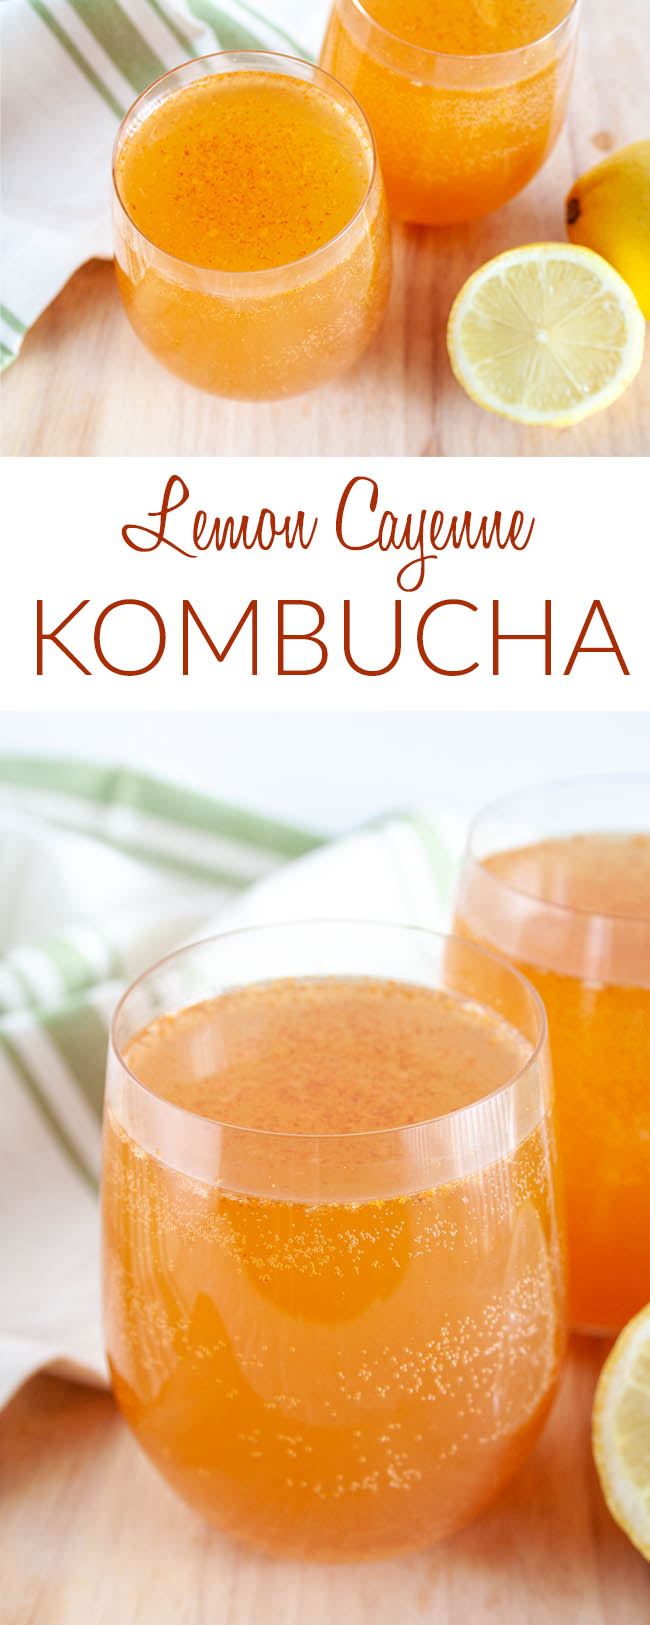 Lemon Cayenne Kombucha collage photo with text.